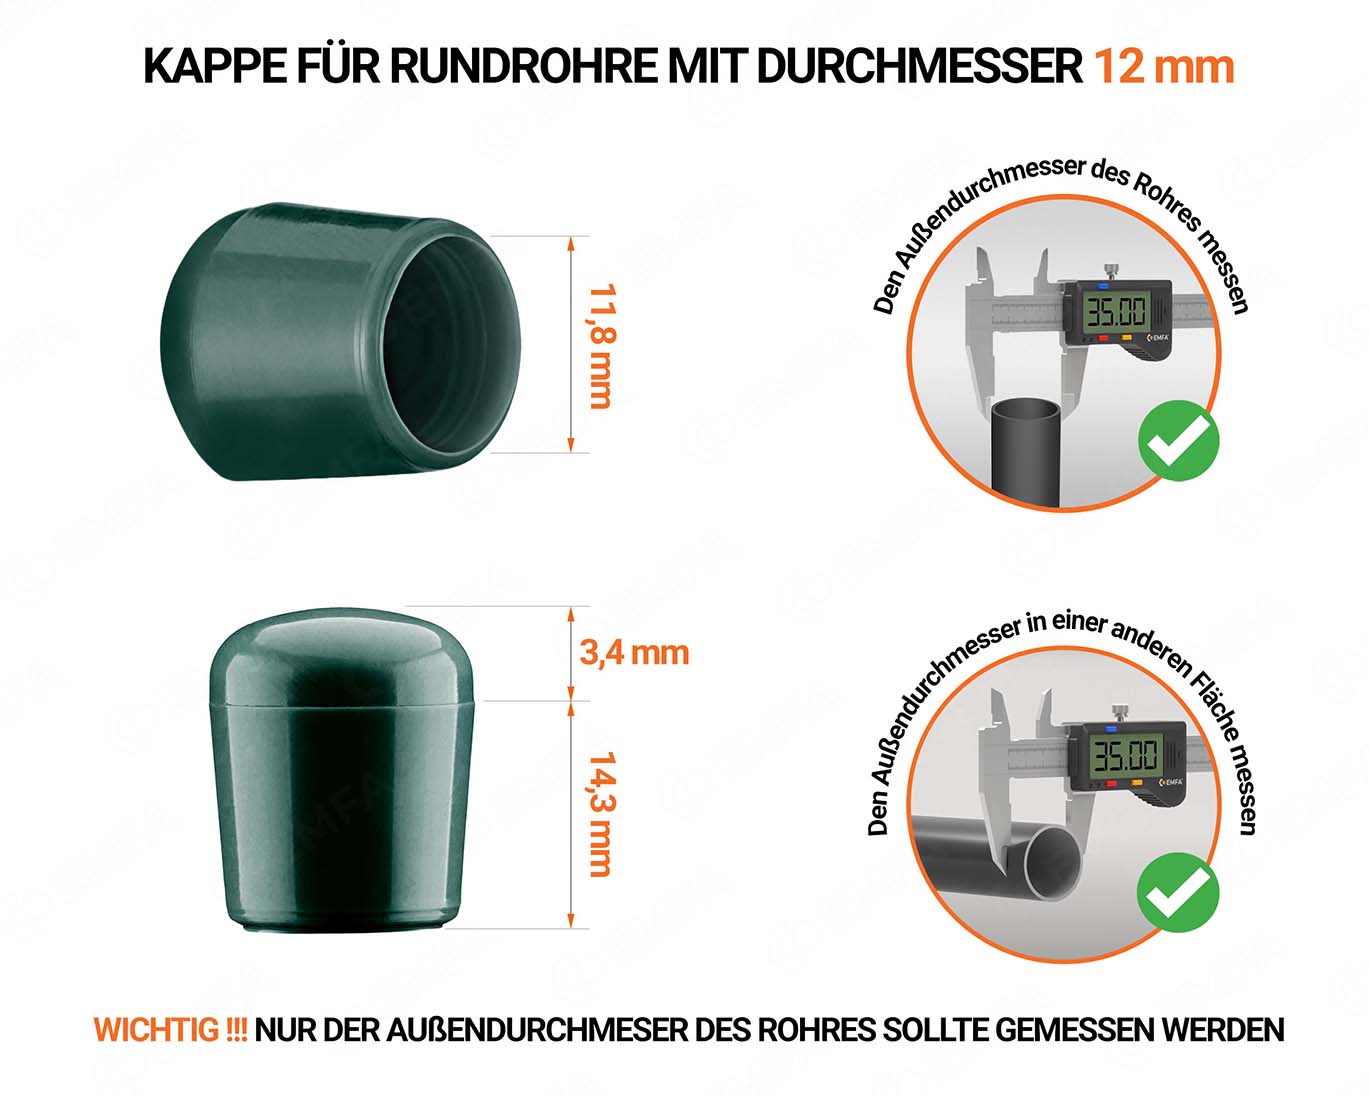 Grüne Endkappen für Rundrohre Außendurchmesser 12 mm mit technischen Abmessungen und Anleitung für korrekte Messung